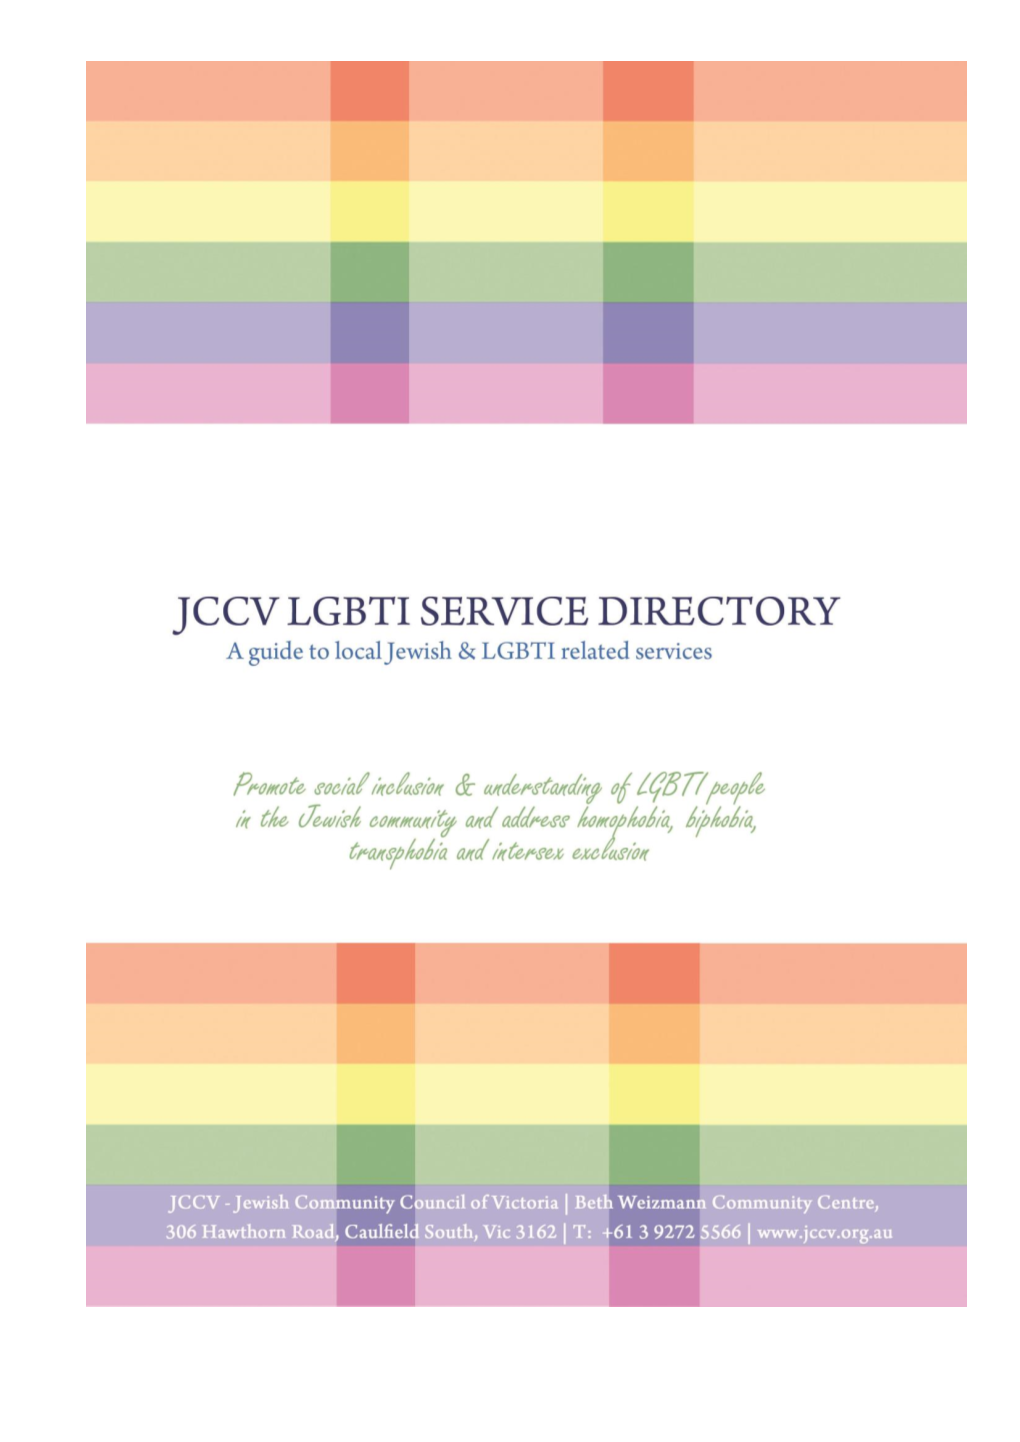 JCCV GBLTI Service Directory